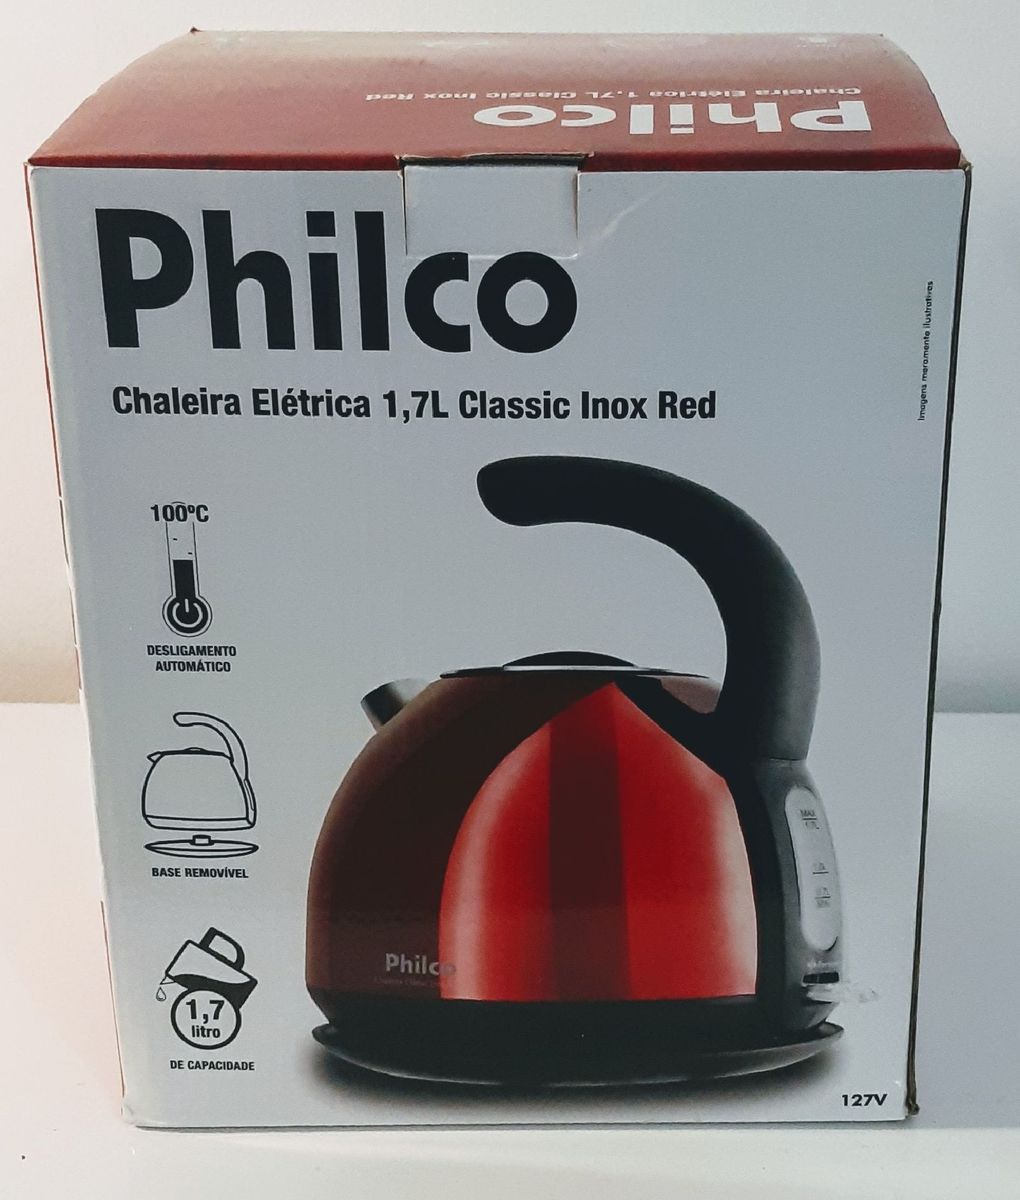 https://photos.enjoei.com.br/chaleira-eletrica-philco-1-7l-classic-inox-red/1200xN/czM6Ly9waG90b3MuZW5qb2VpLmNvbS5ici9wcm9kdWN0cy84Njc4OTExLzQ3OTgyYzczZTAxZTEyNjE4MTMzOTJmZjZlNGMyMTRjLmpwZw